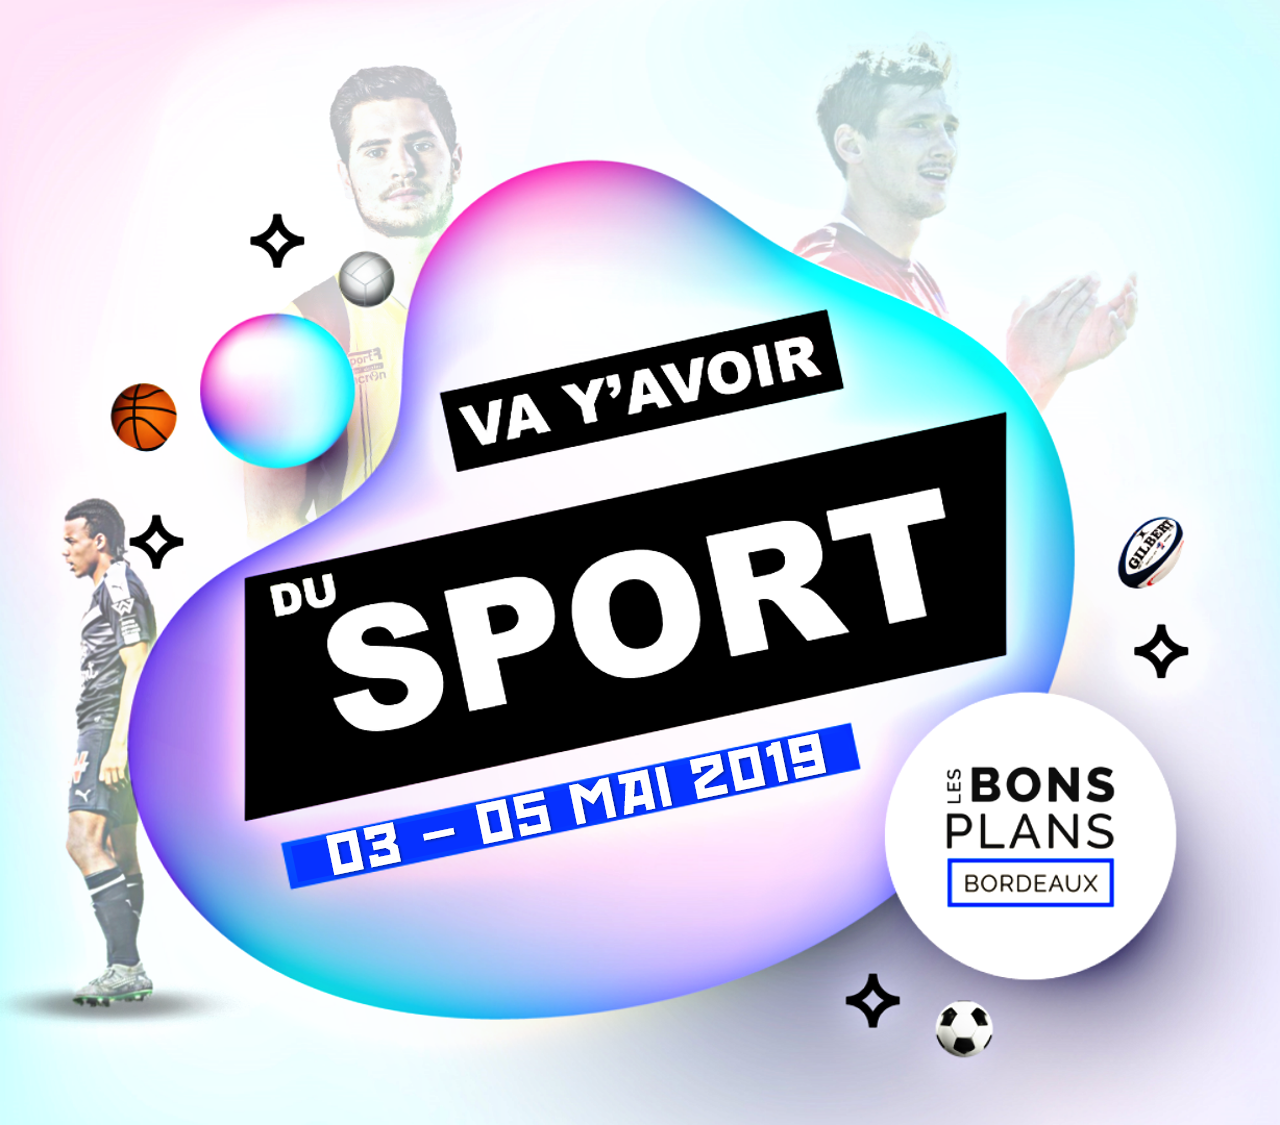 Les bons plans Bordeaux présentent : Va y'avoir du sport, votre rendez-vous sport bordelais !